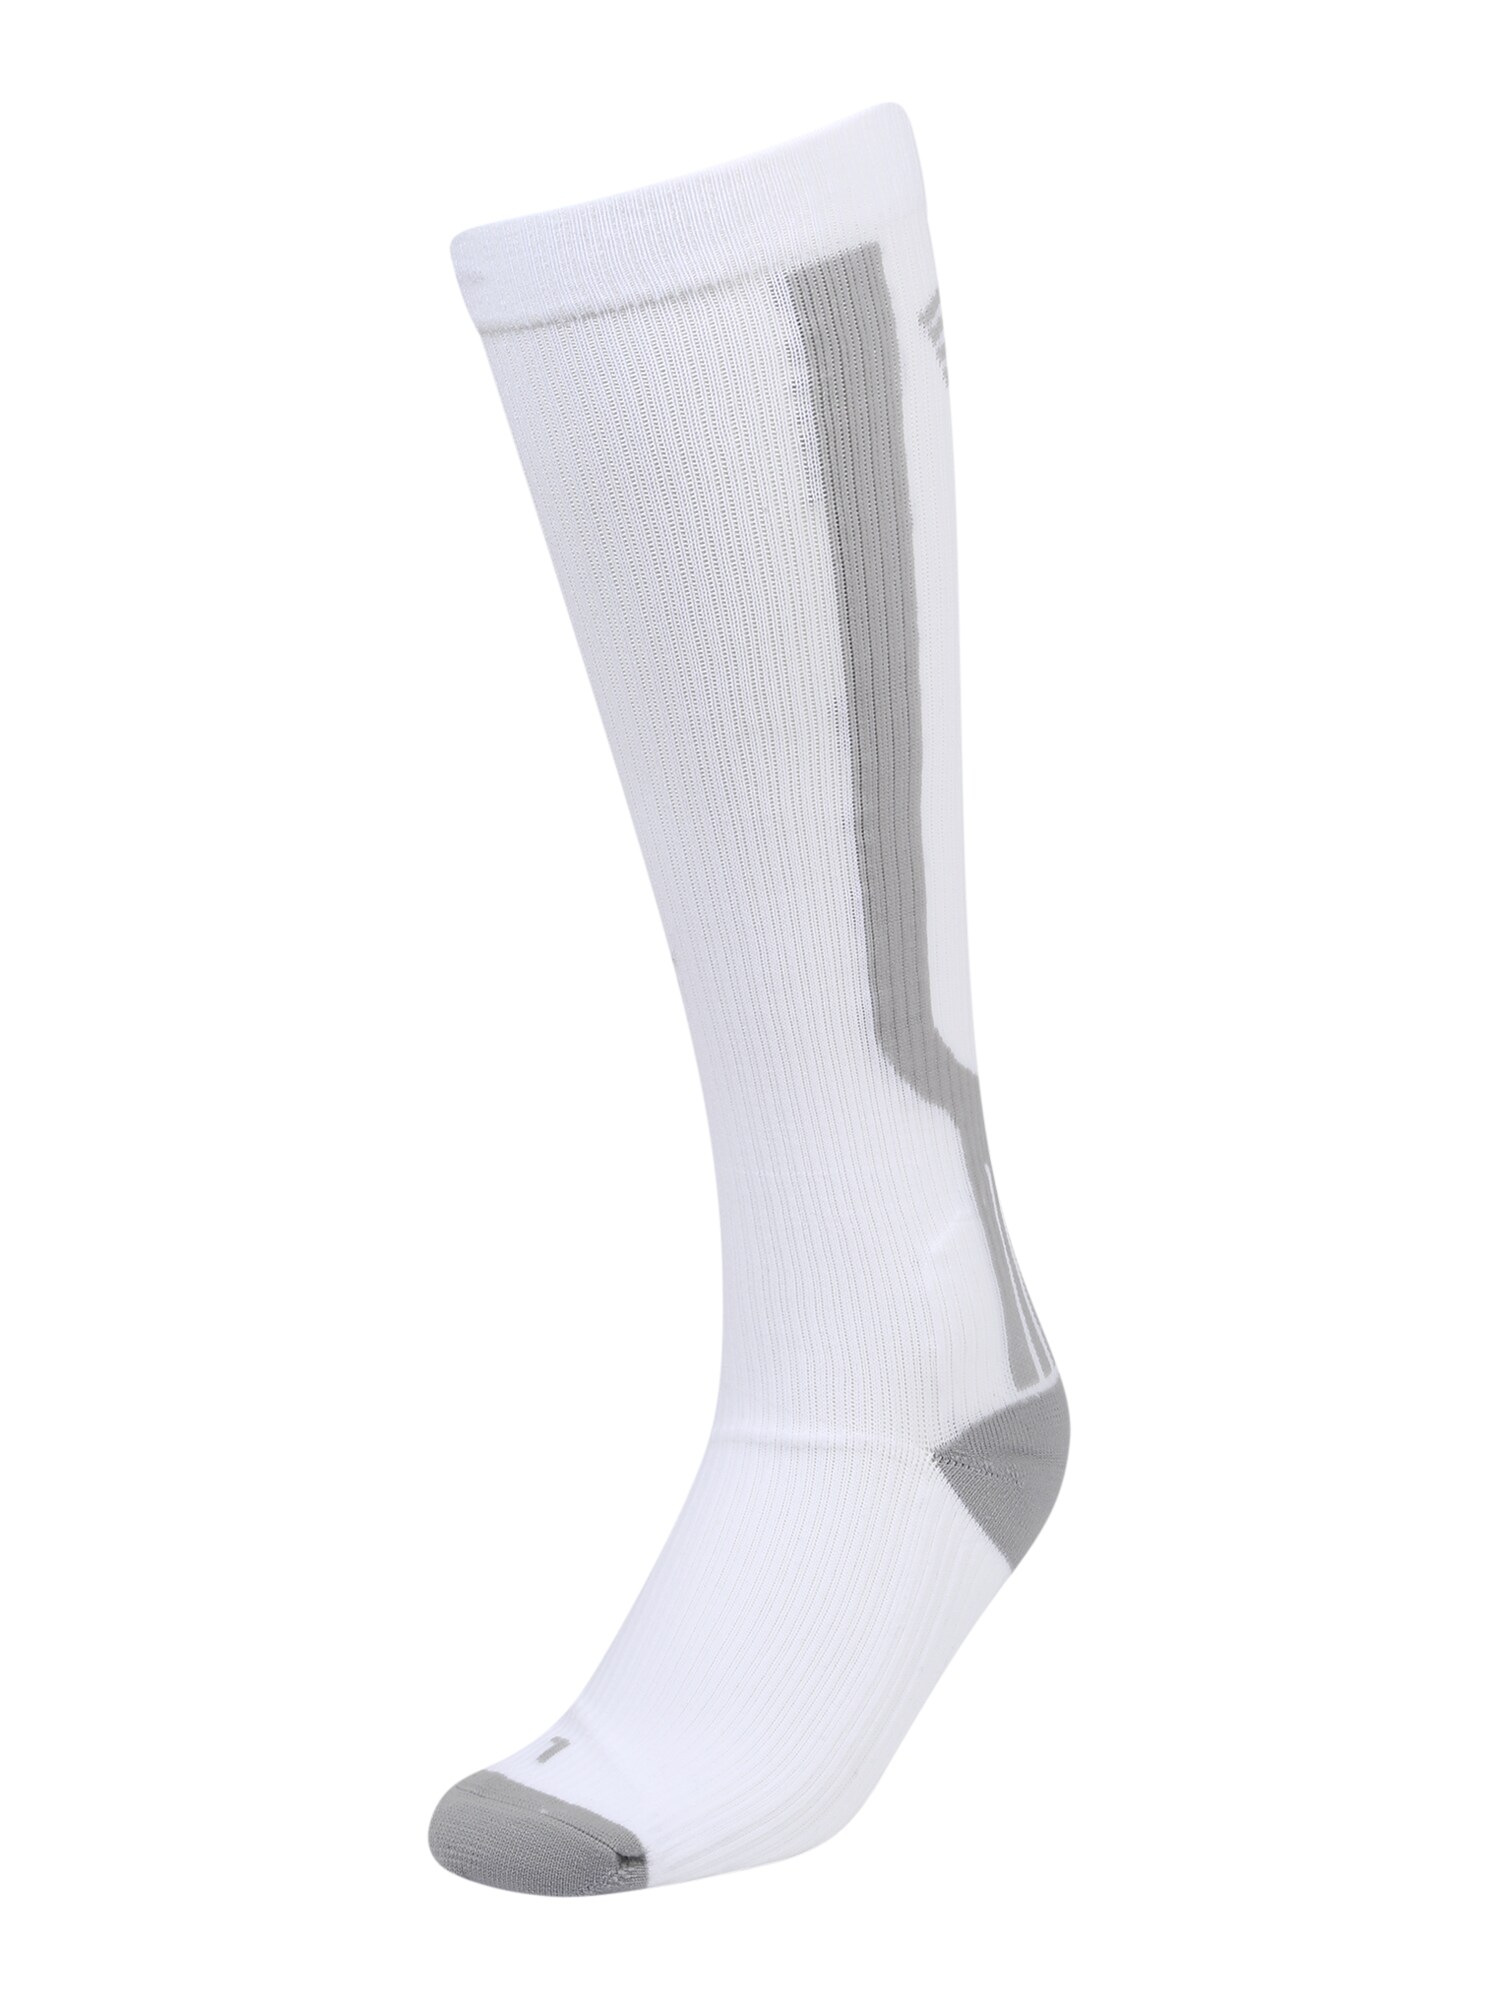 Newline Sportinės kojinės pilka / balta